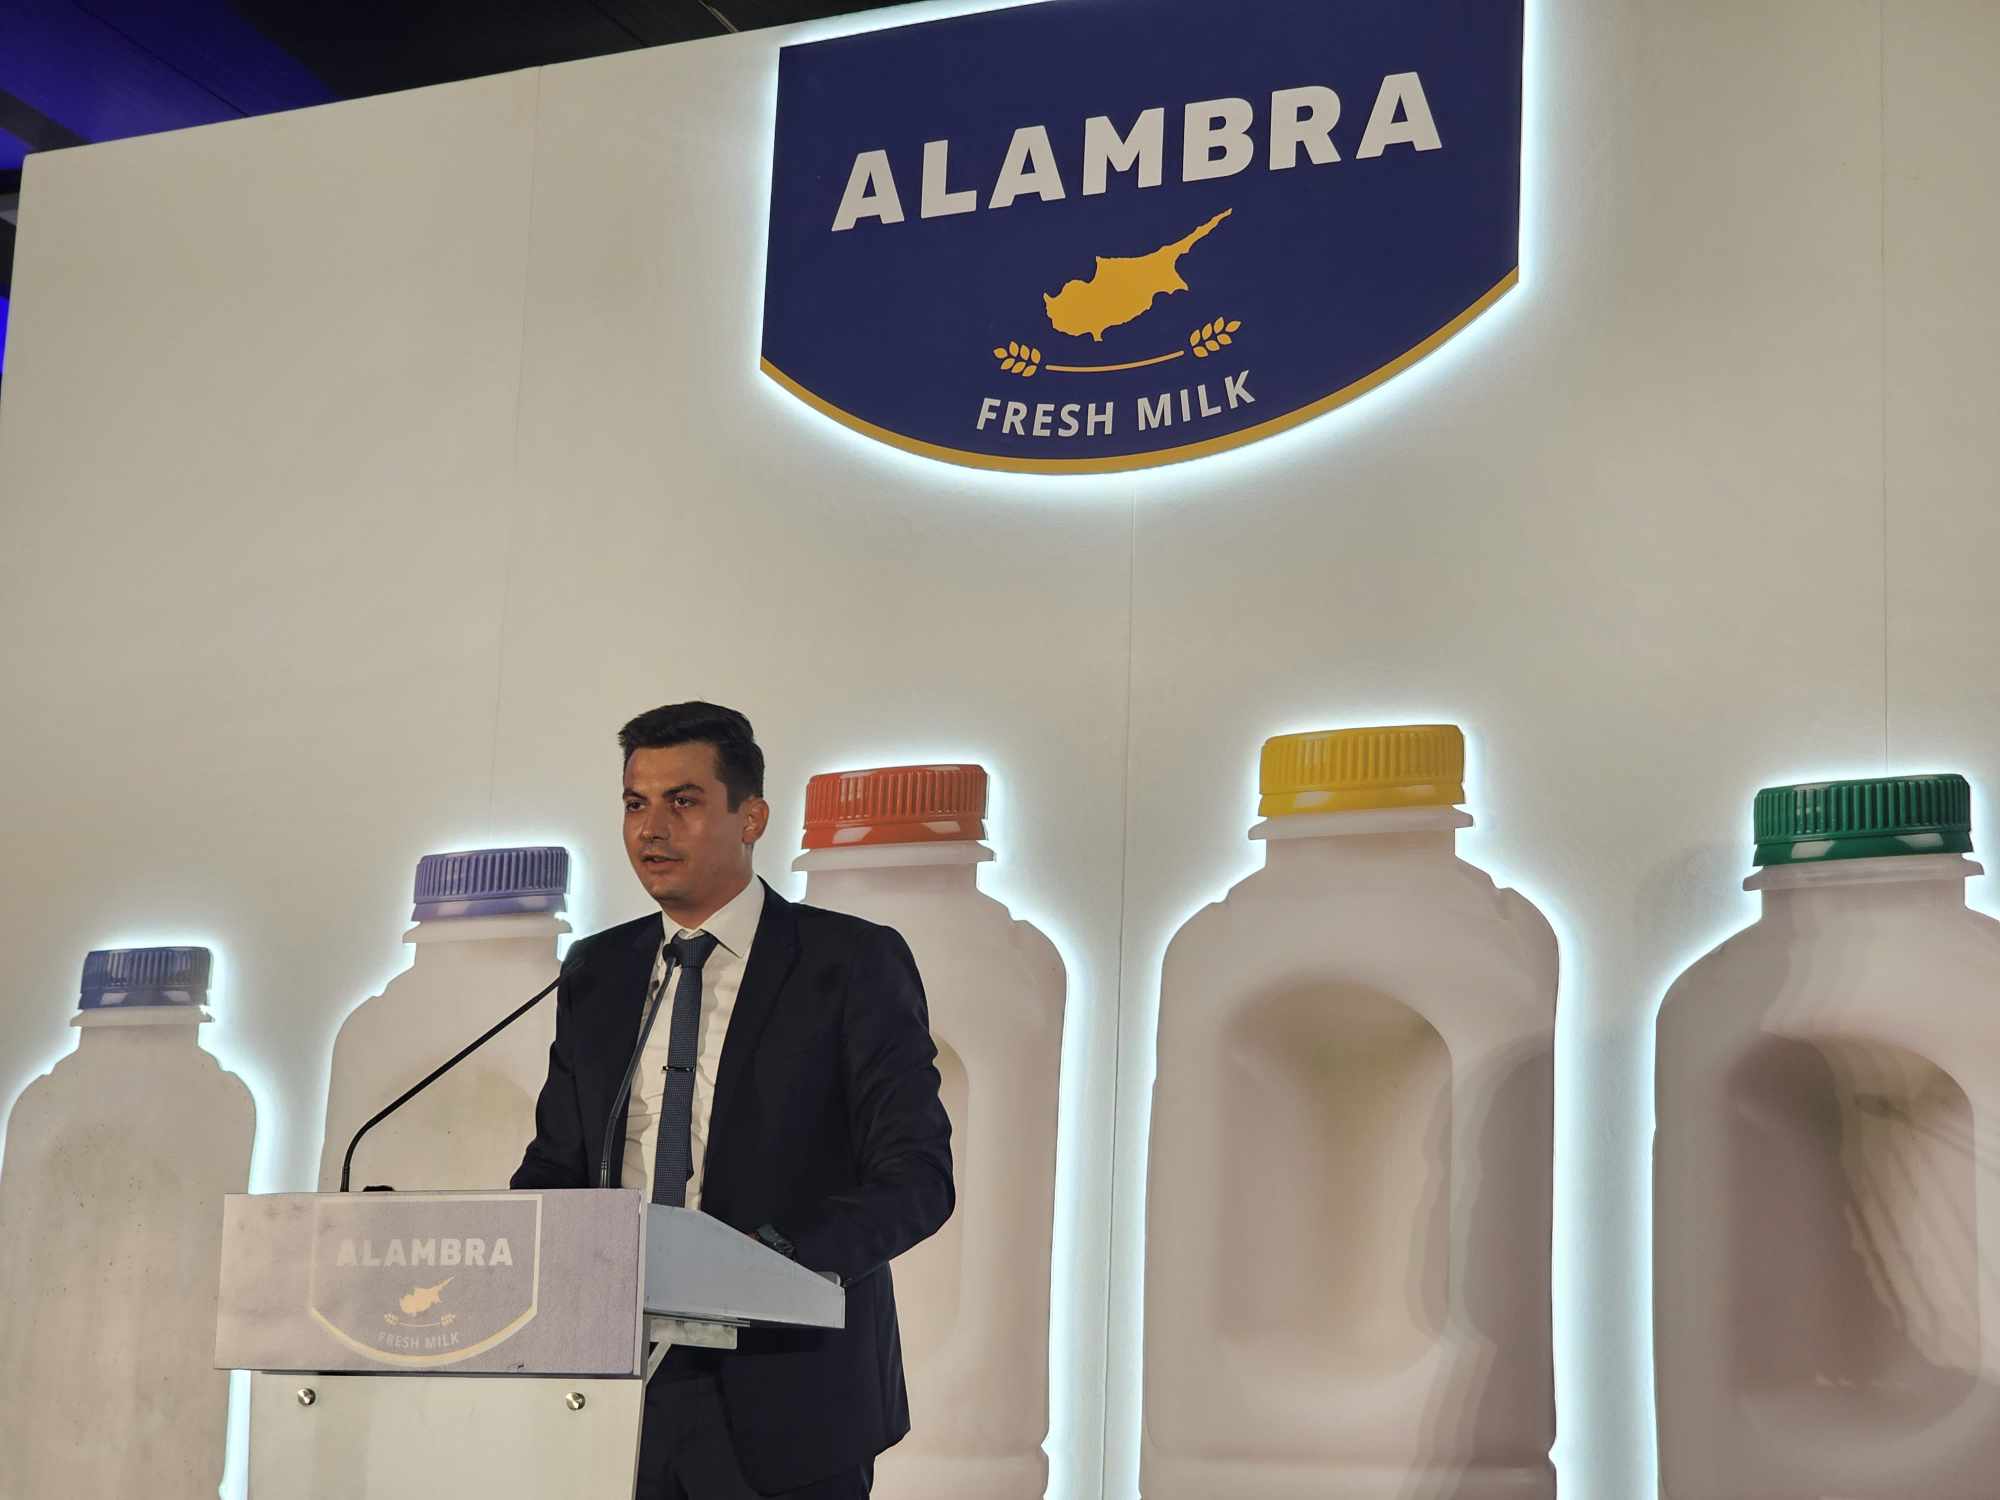 Ο Πρόεδρος της Δημοκρατίας εγκαίνιασε την νέα μονάδα της γαλακτοβιομηχανίας «Alambra» στην Αραδίππου (φώτο)